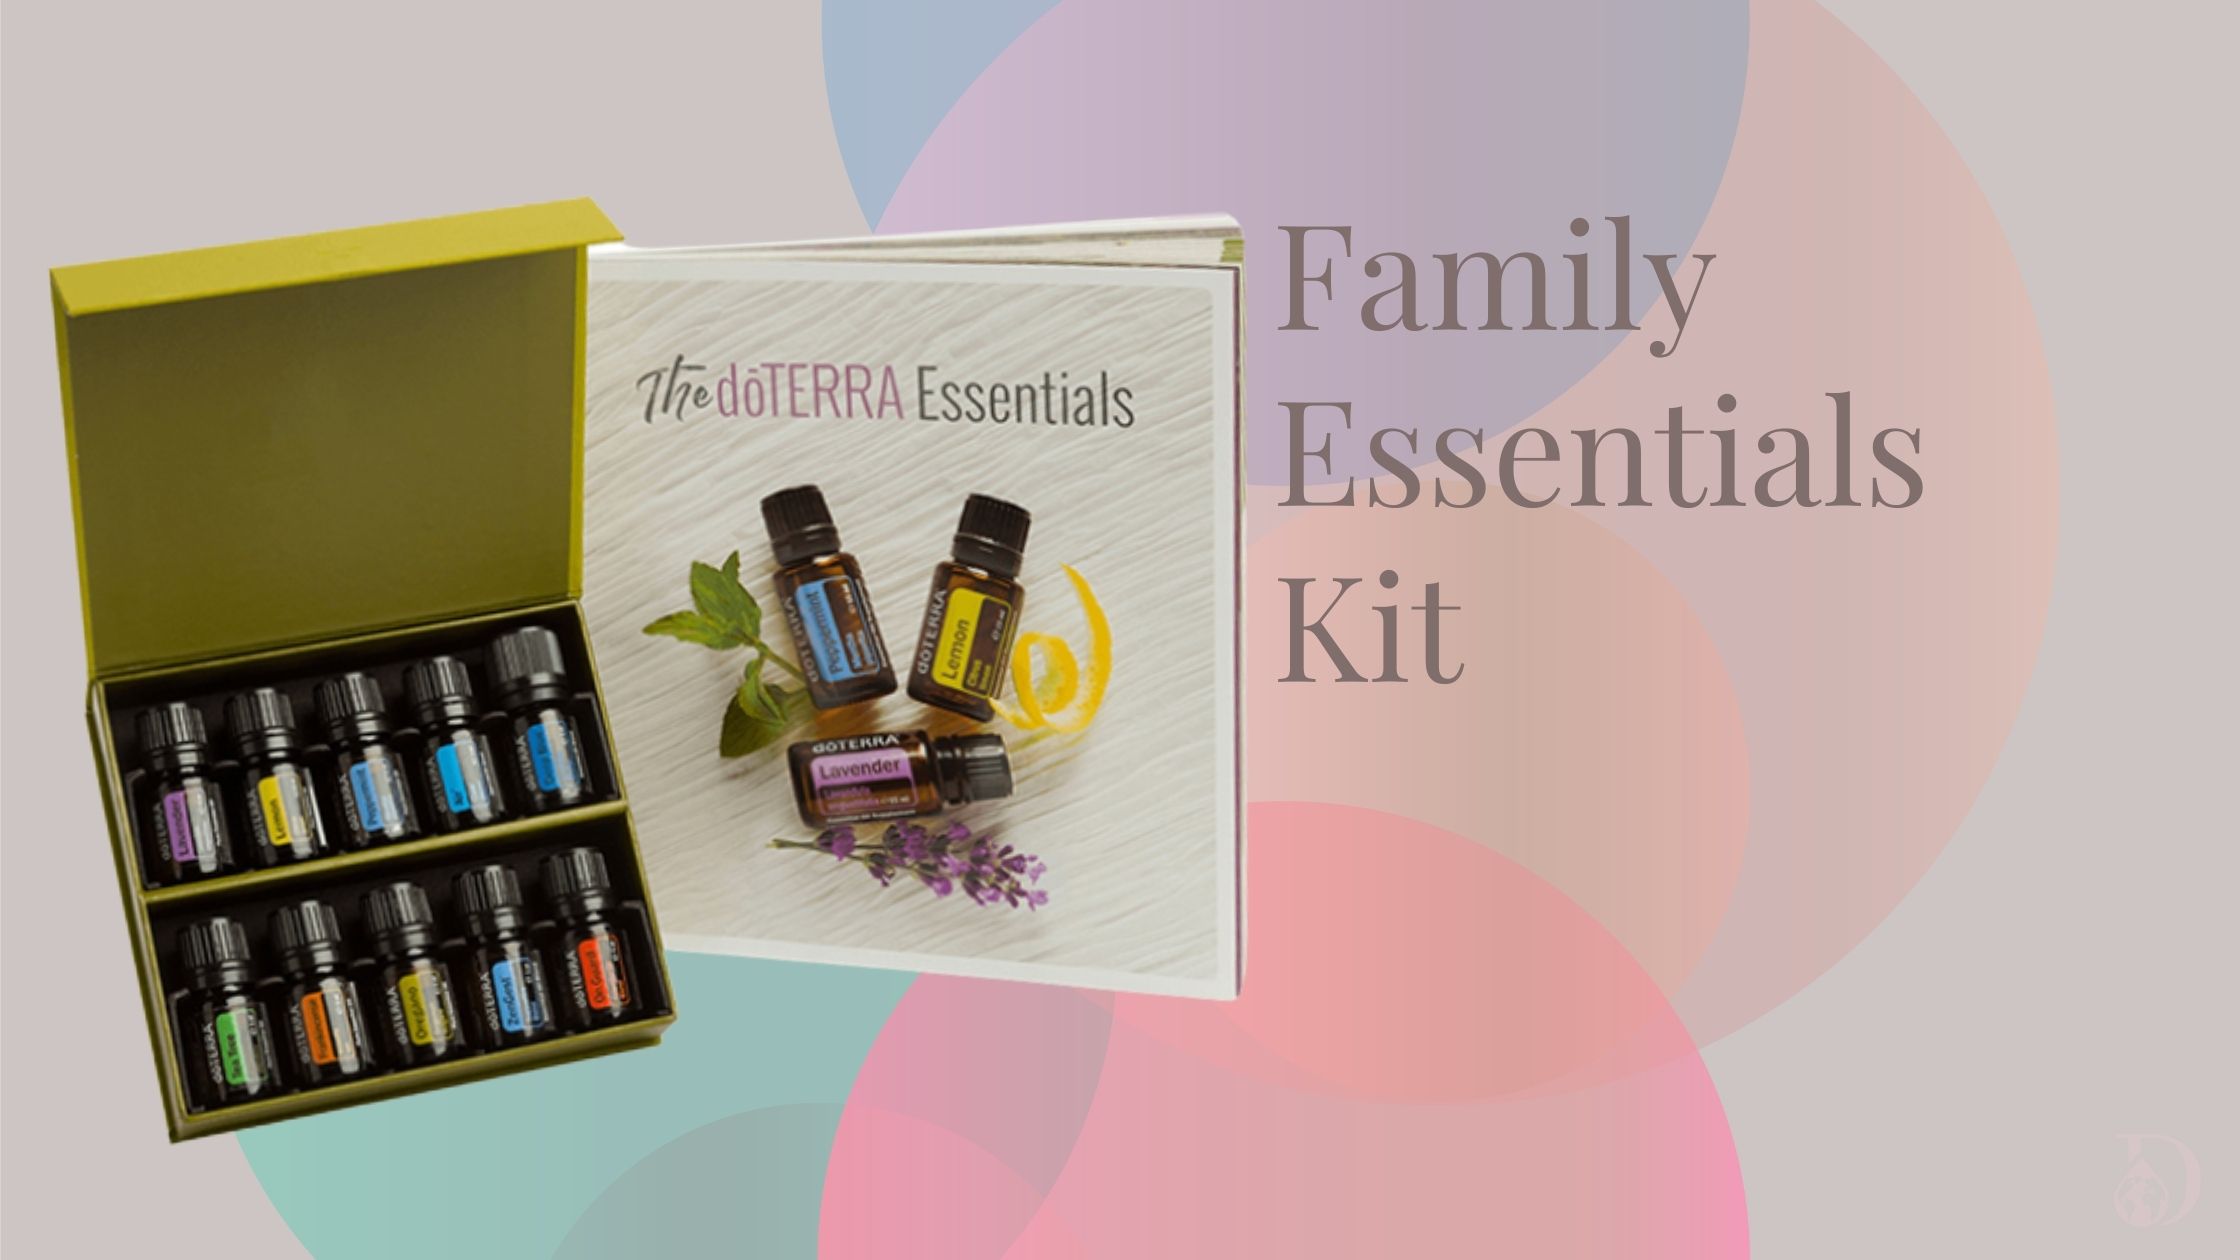 Falily Essential Kit mit ätherischen doTERRA Ölen